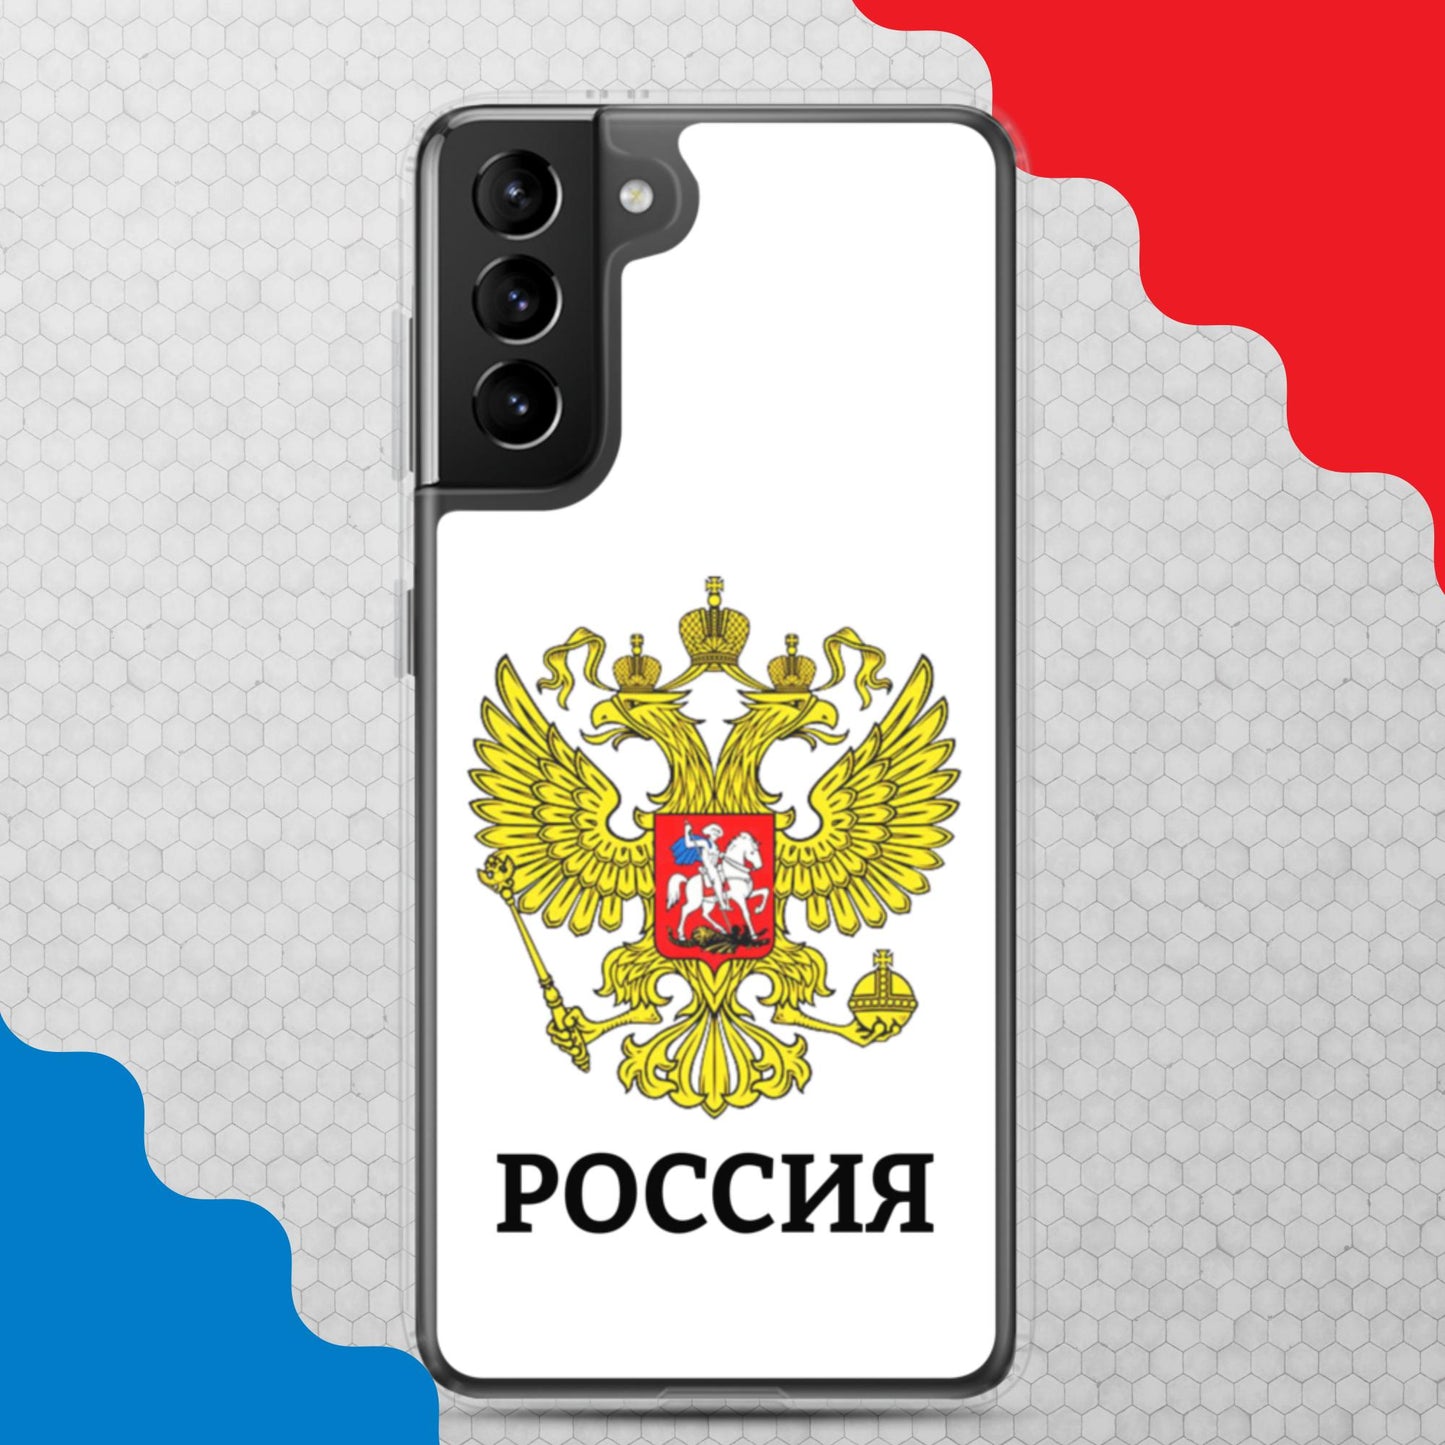 Samsung-Handyhülle mit Russland-Wappen in weiß (alle Modelle)